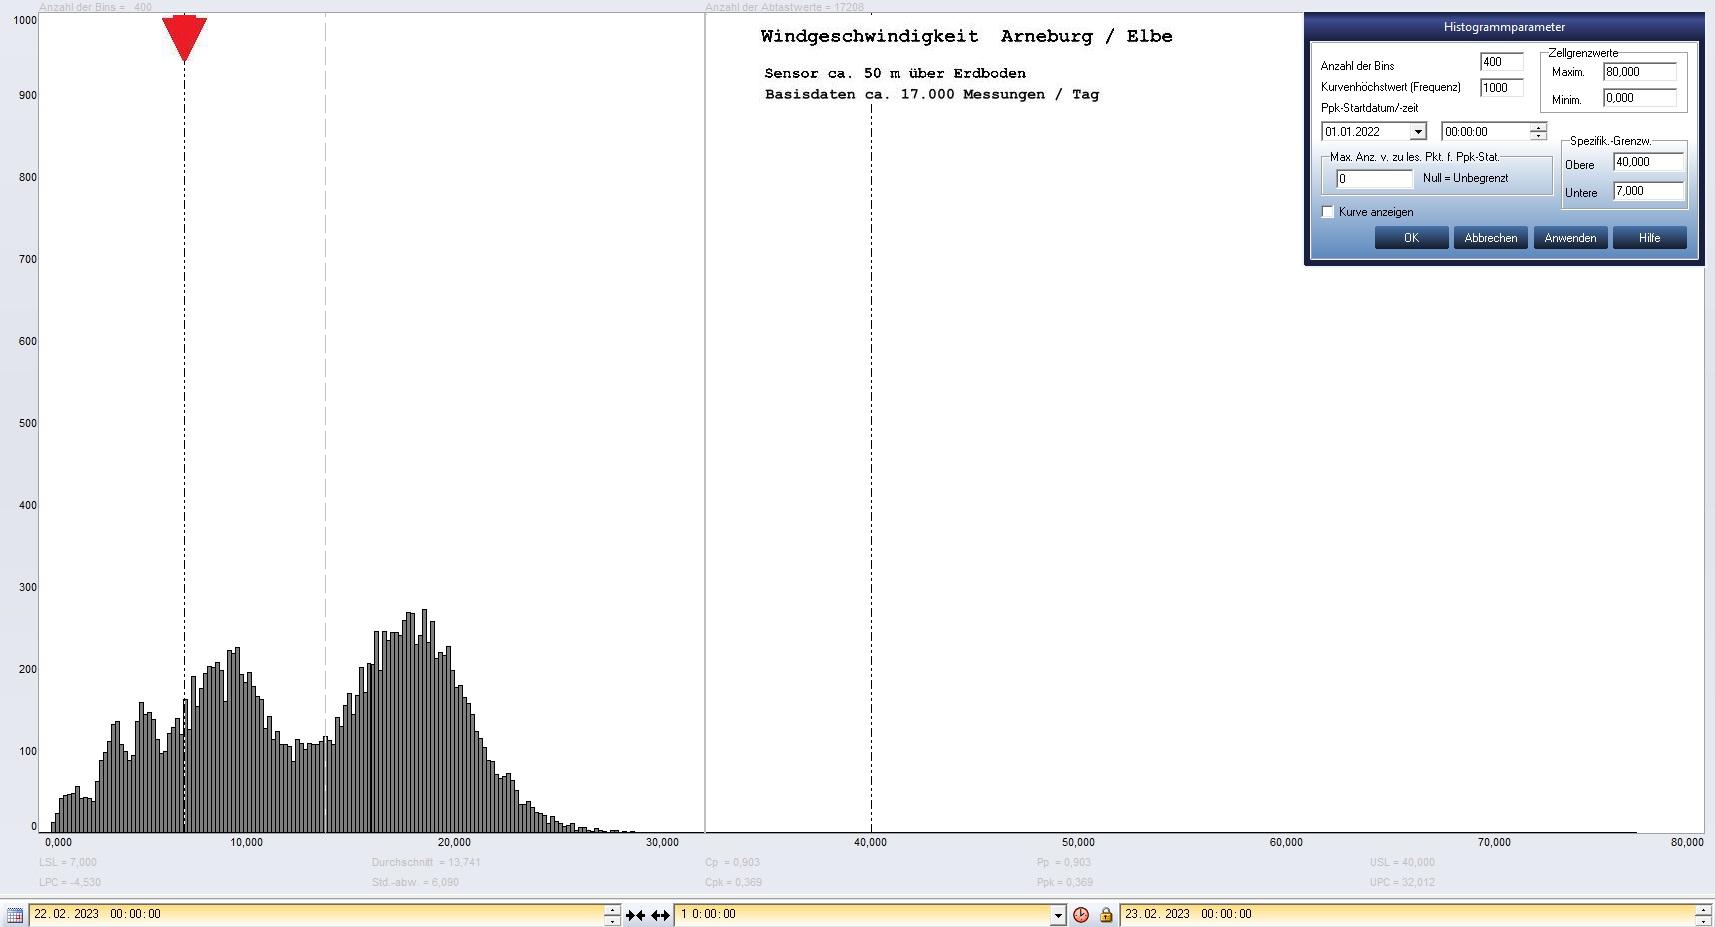 Arneburg Tages-Histogramm Winddaten, 22.02.2023
  Histogramm, Sensor auf Gebude, ca. 50 m ber Erdboden, Basis: 5s-Aufzeichnung